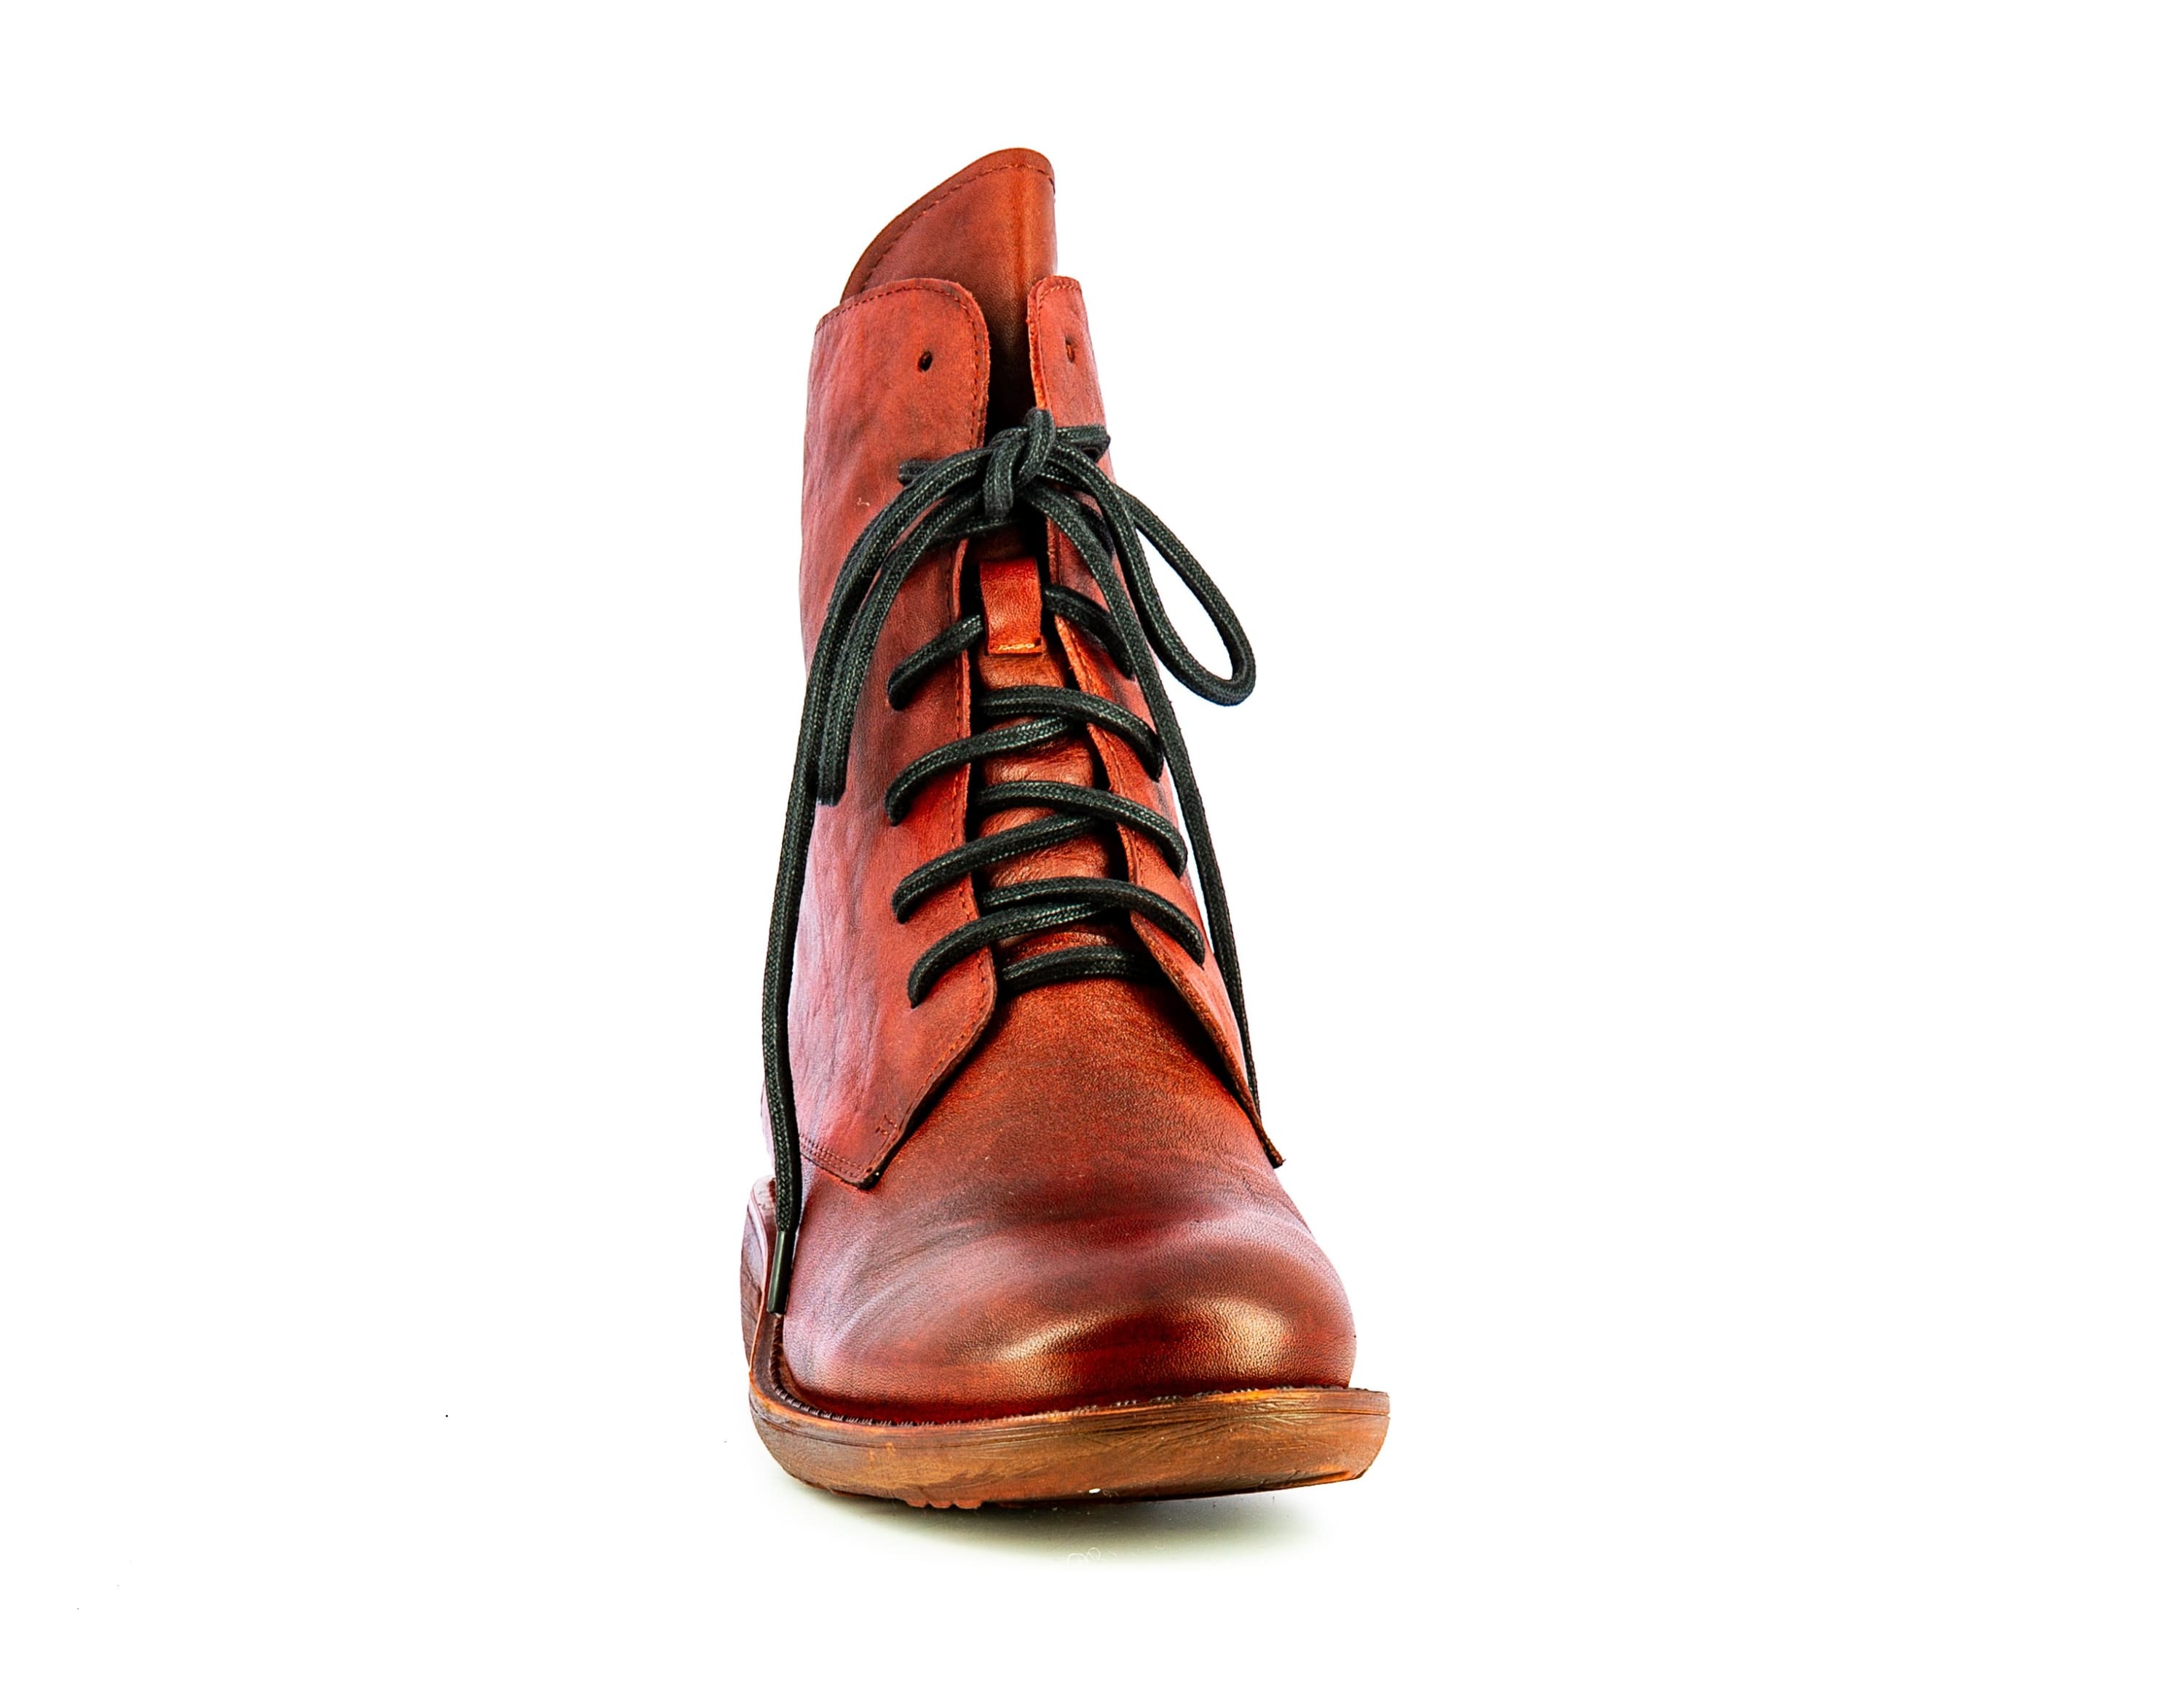 Shoe IDCALIAO 11 - Boots